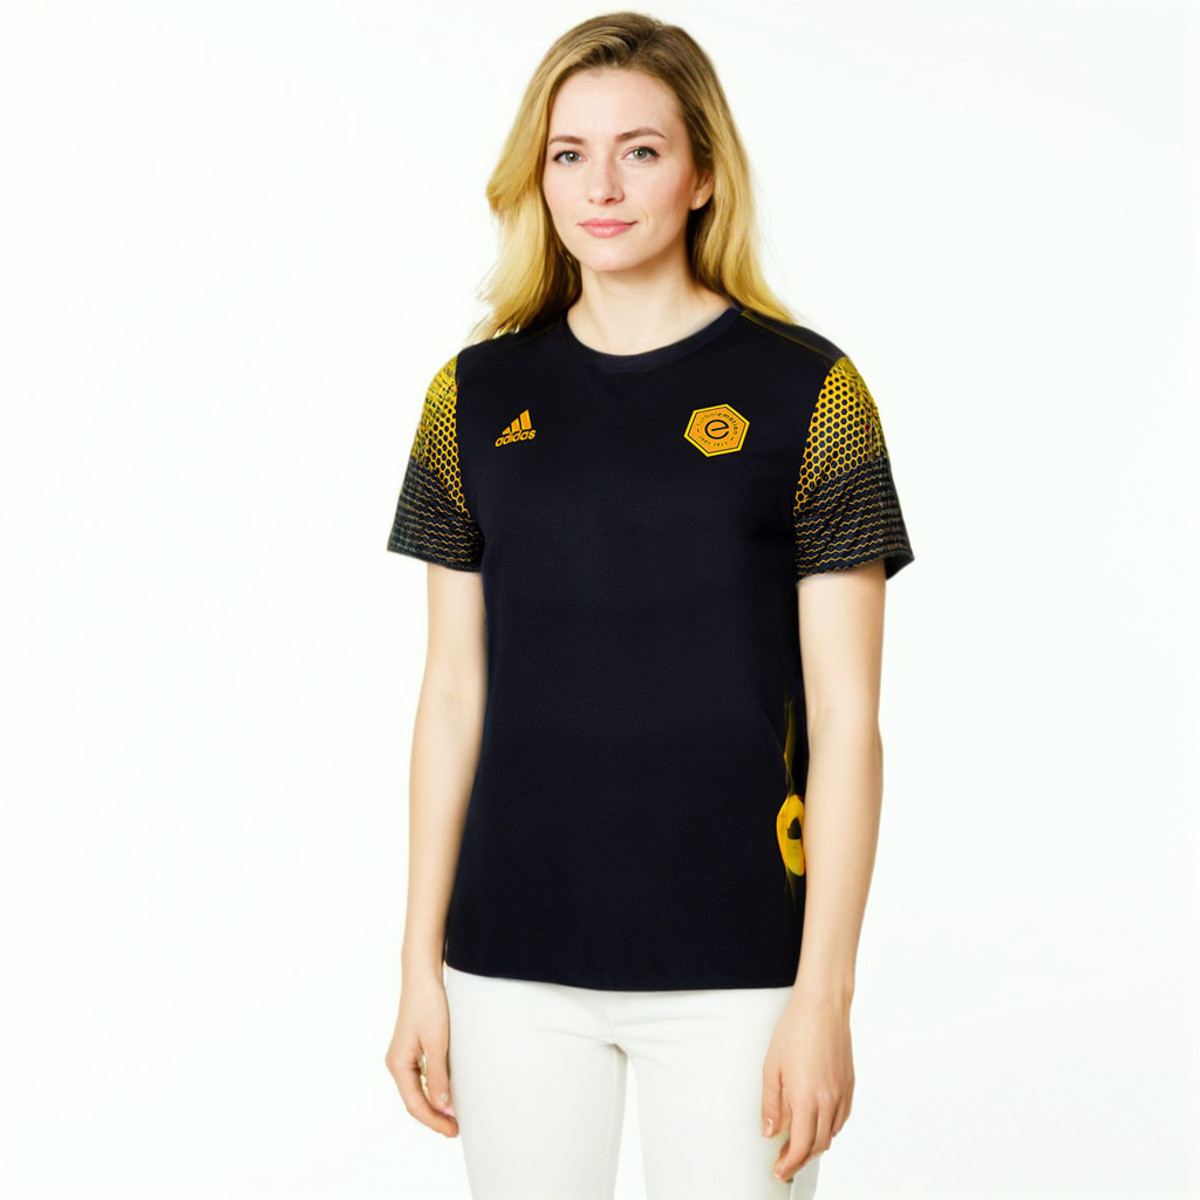 Camiseta adidas all 20 aniversario Fútbol Black-Gold - Fútbol Emotion